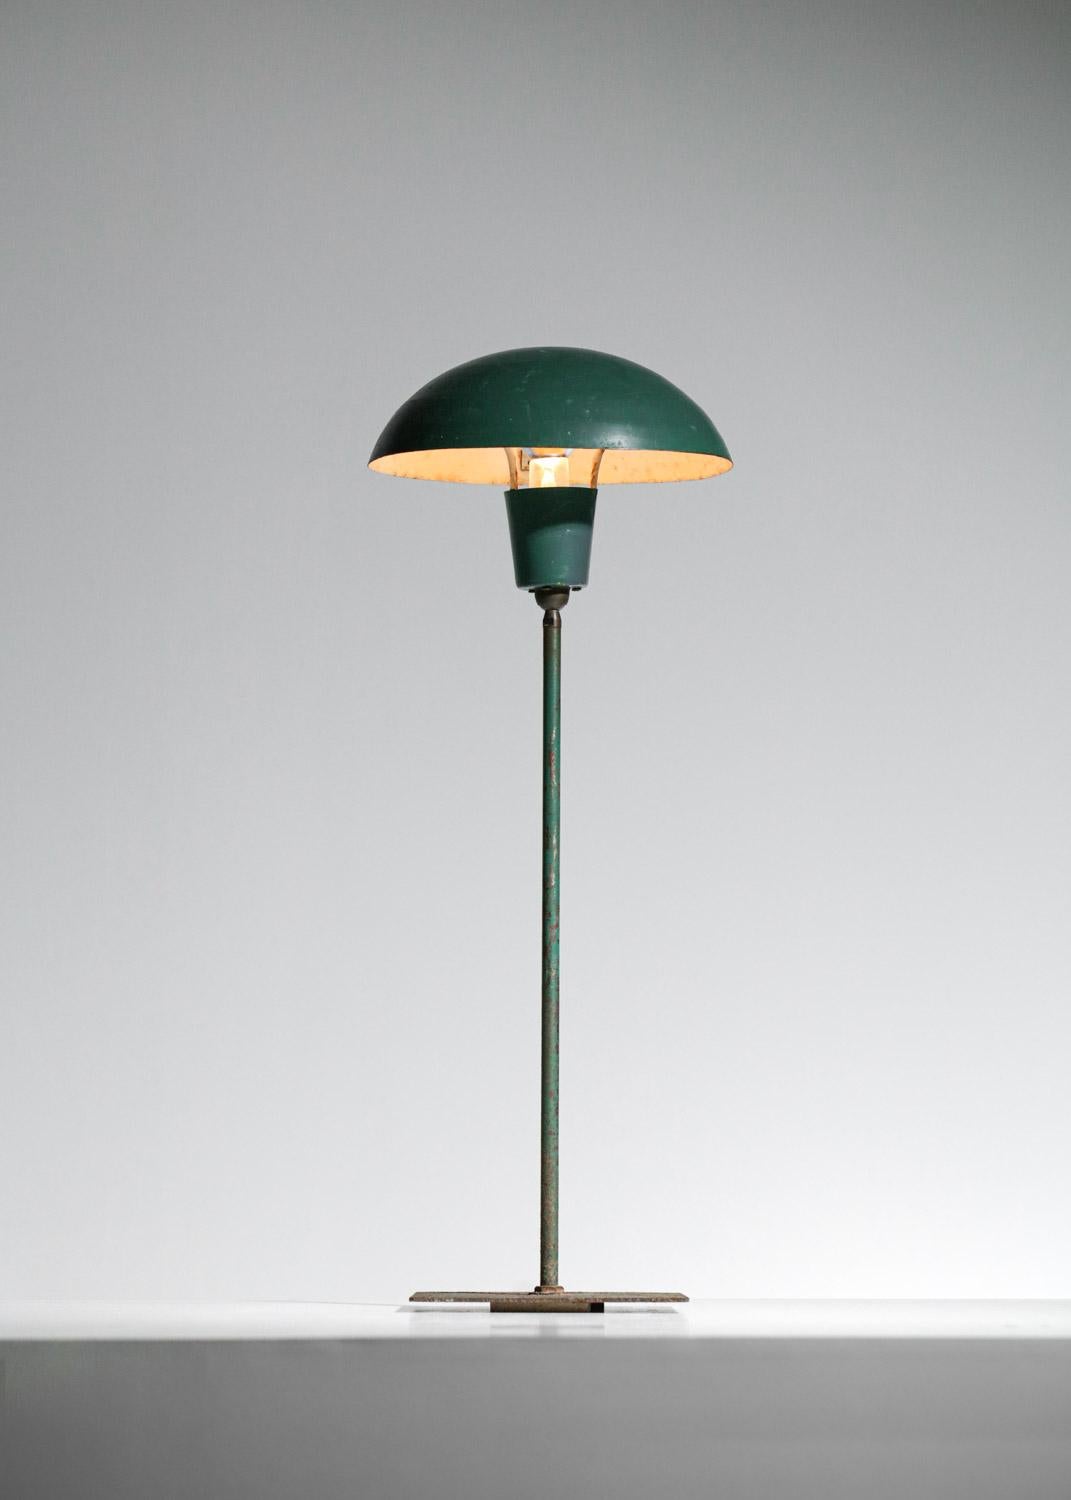 Skandinavische Tisch- oder kleine Stehlampe im Industriestil für den Außenbereich im Stil der Arbeiten von Poul Hennigsen aus den 50er Jahren. Struktur der Basis und des Schirms aus dunkelgrün lackiertem Metall (Originalfarbe). Ein Kugelgelenk